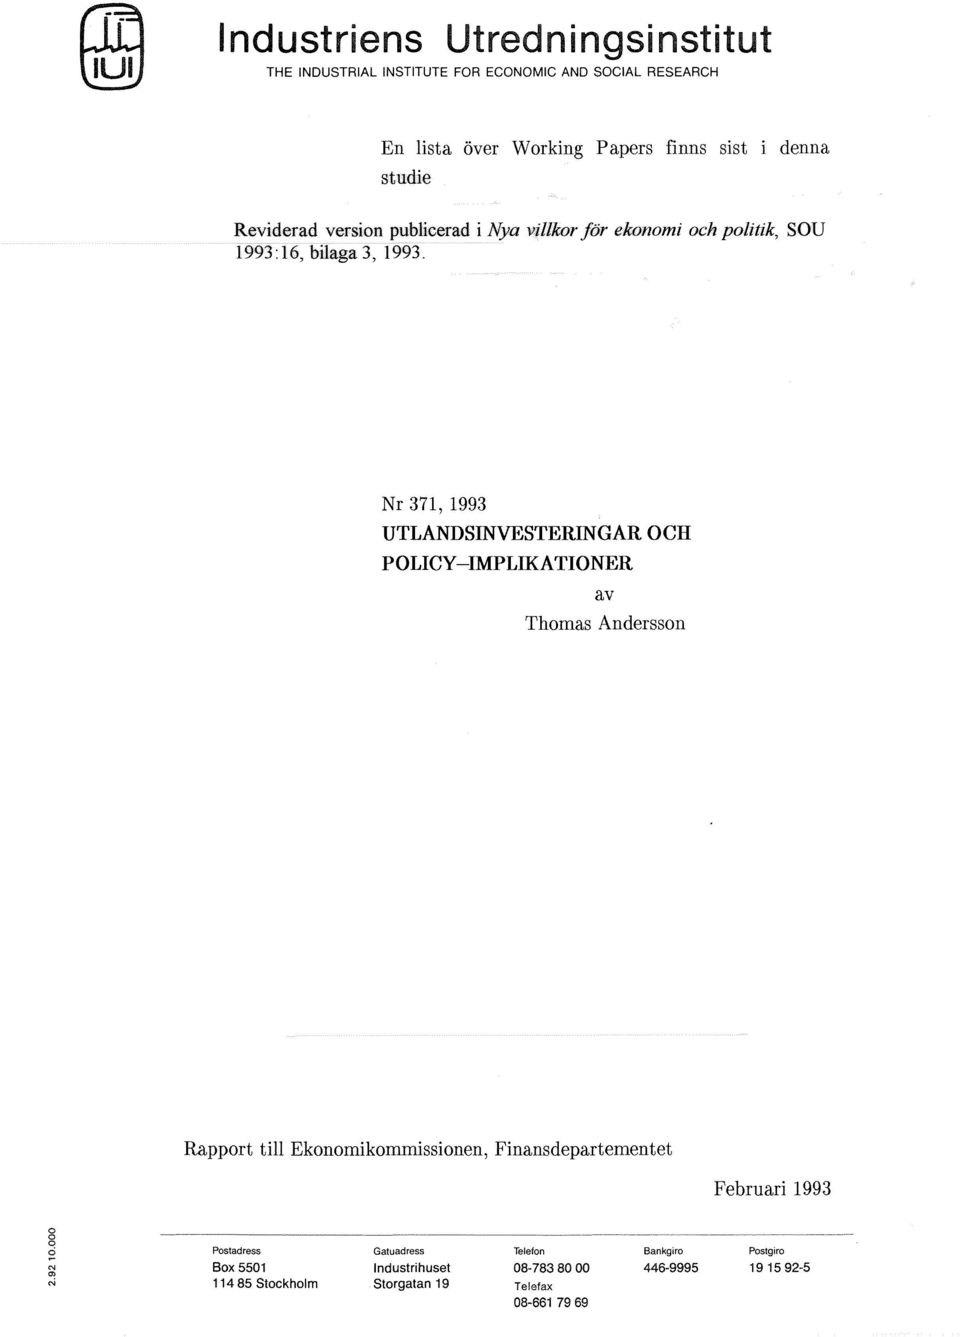 Nr 371, 1993 UTLANDSINVESTERINGAR OCH POLICY-IMPLIKATIONER av Thomas Andersson Rapport till Ekonomikommissionen, Finansdepartementet